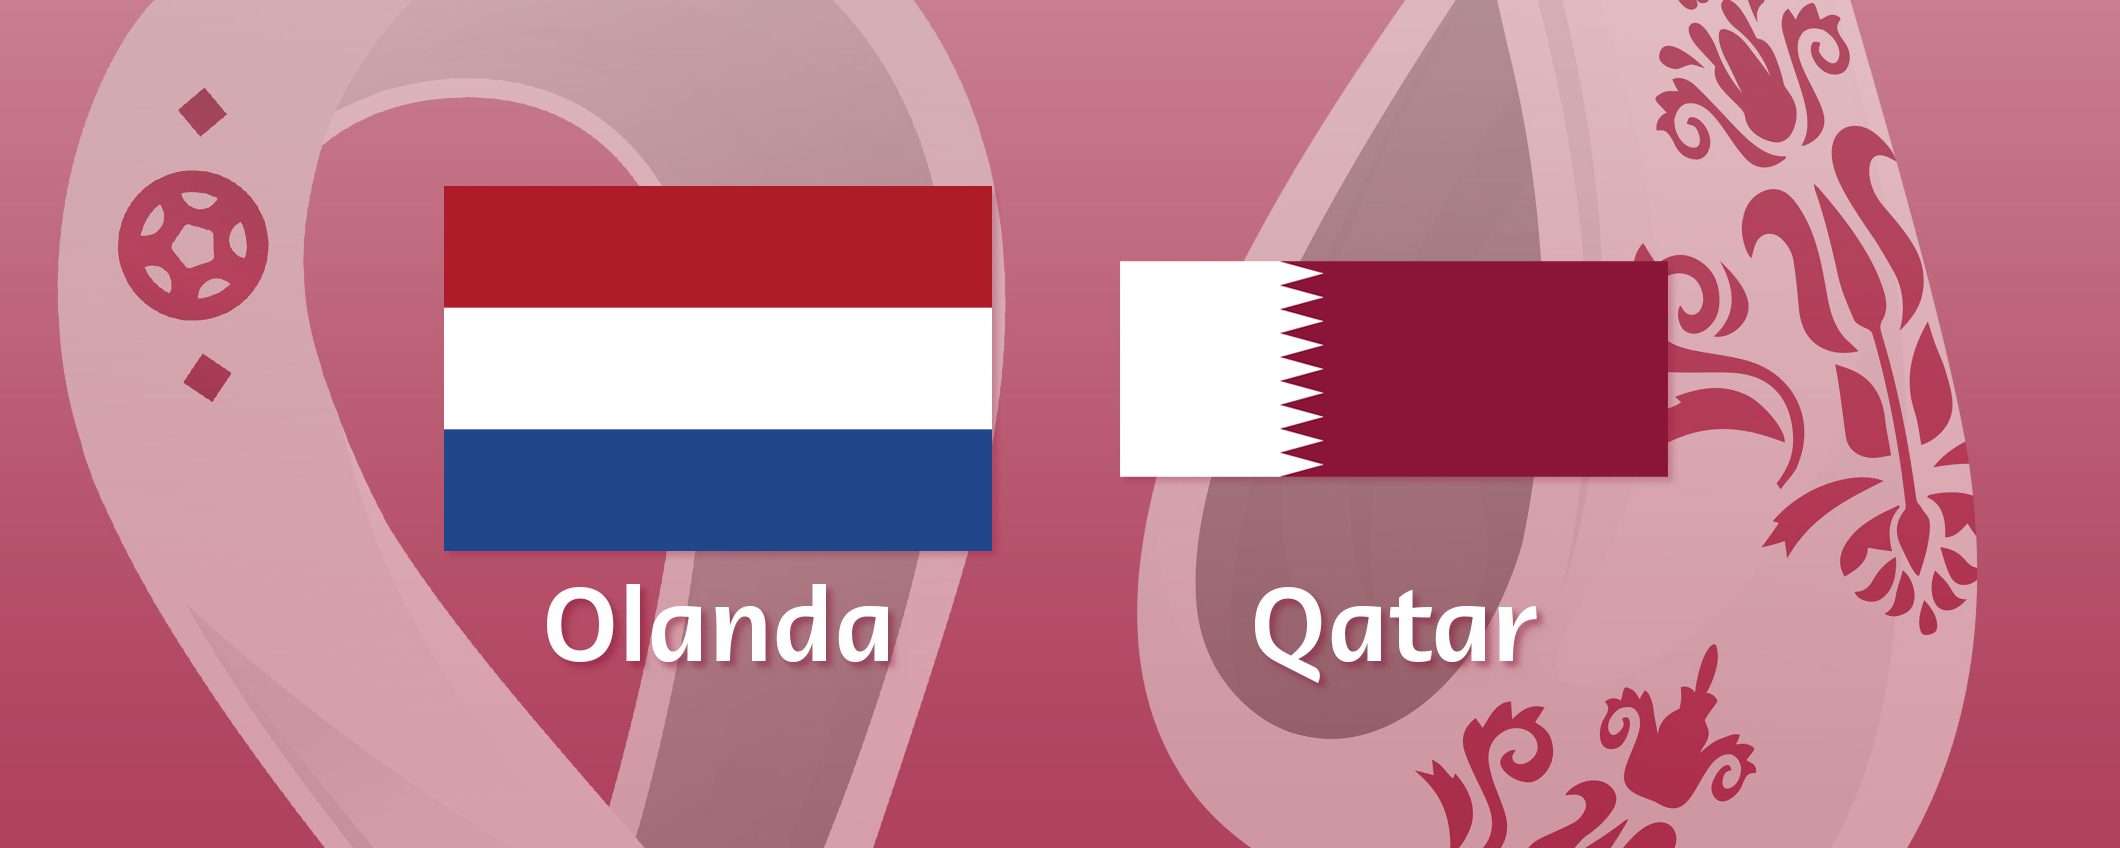 Come vedere Olanda-Qatar in streaming